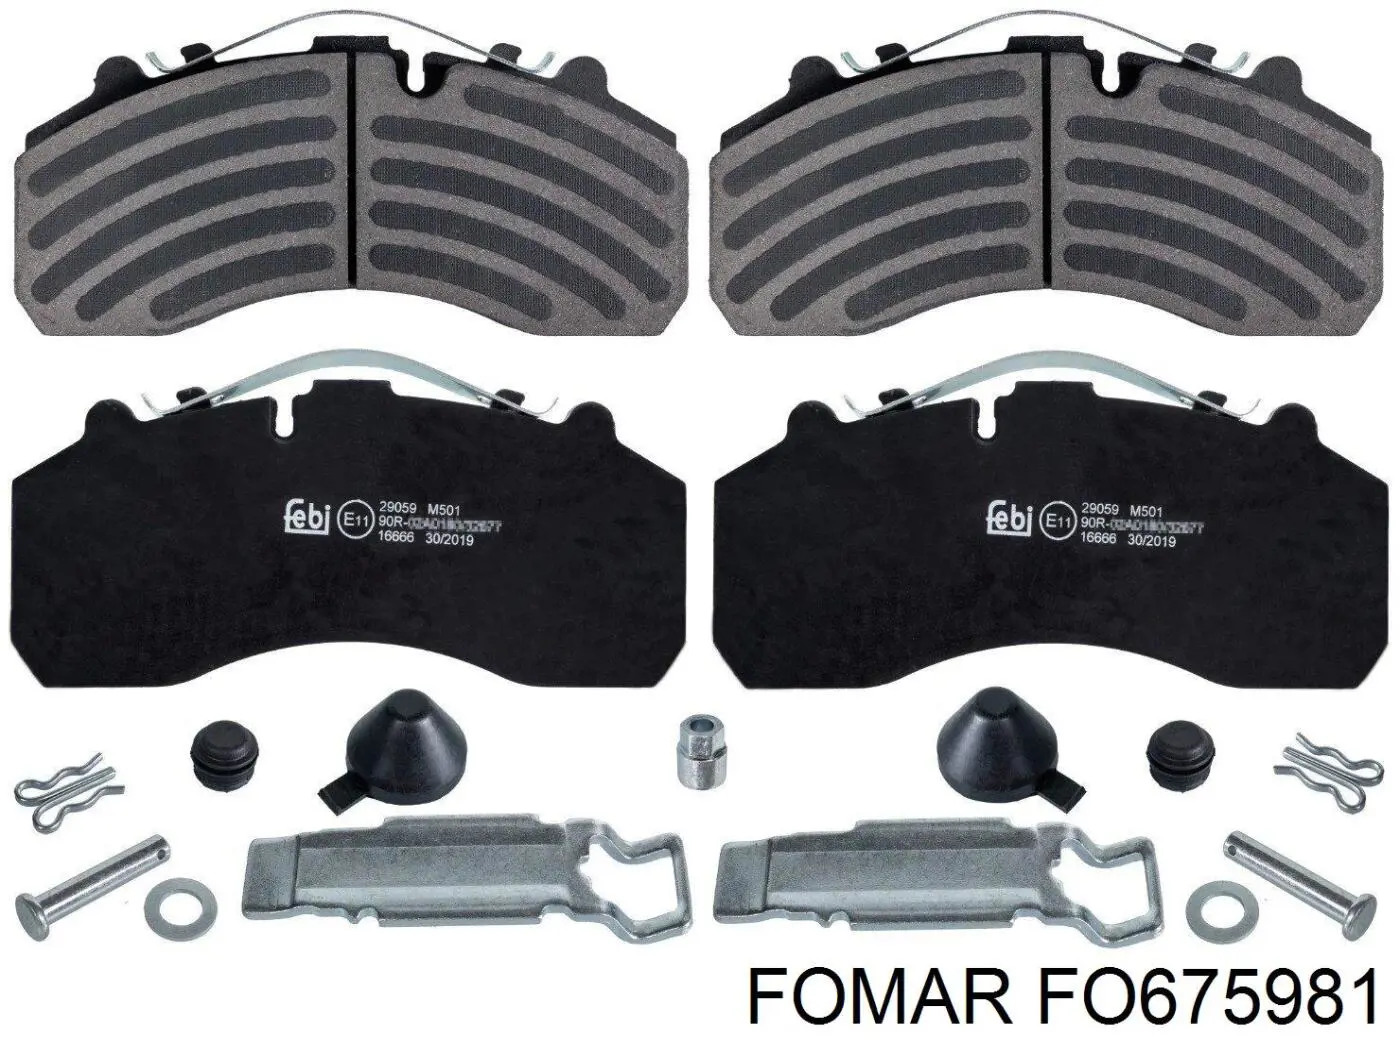 FO675981 Fomar Roulunds колодки тормозные передние дисковые